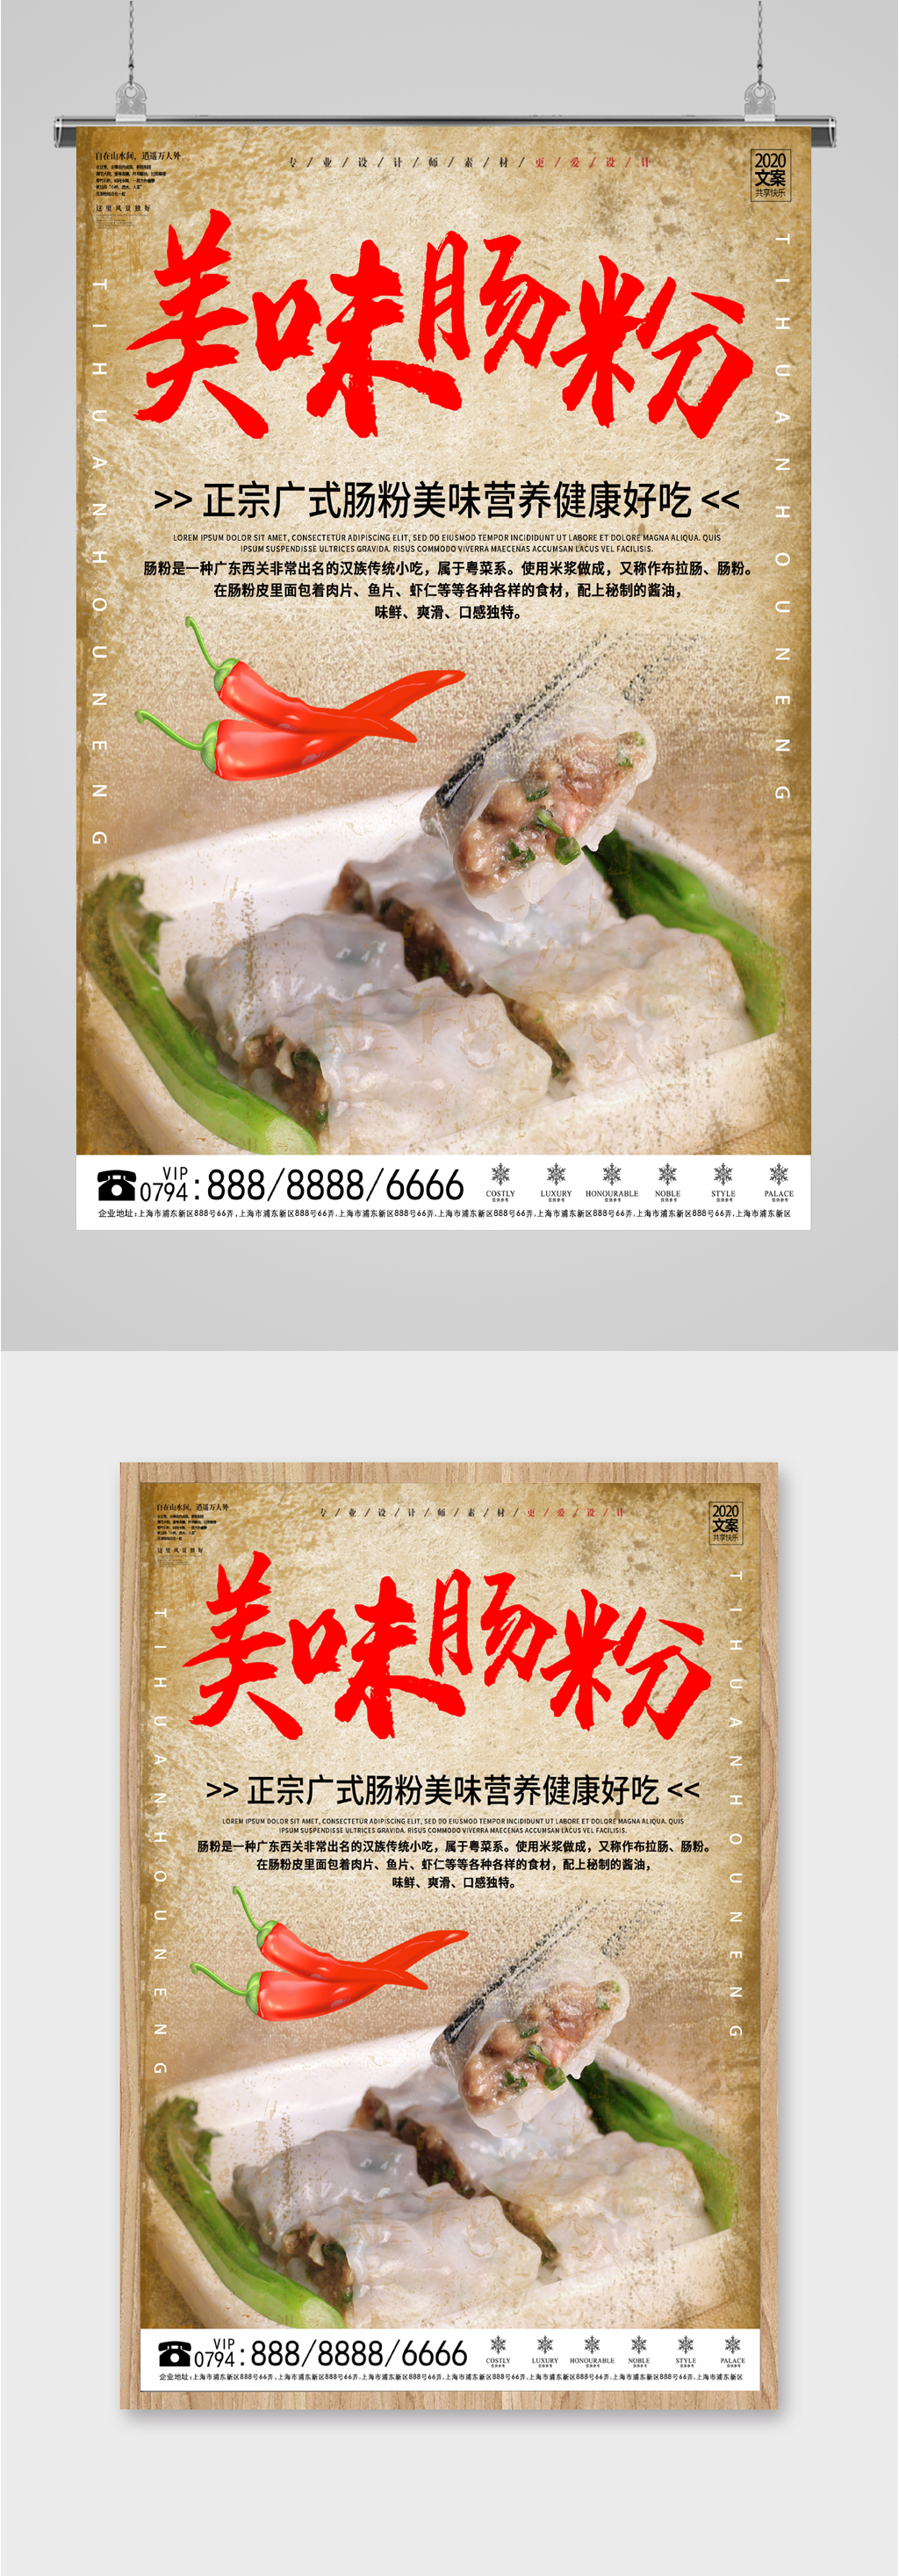 广东石磨肠粉广告牌图片